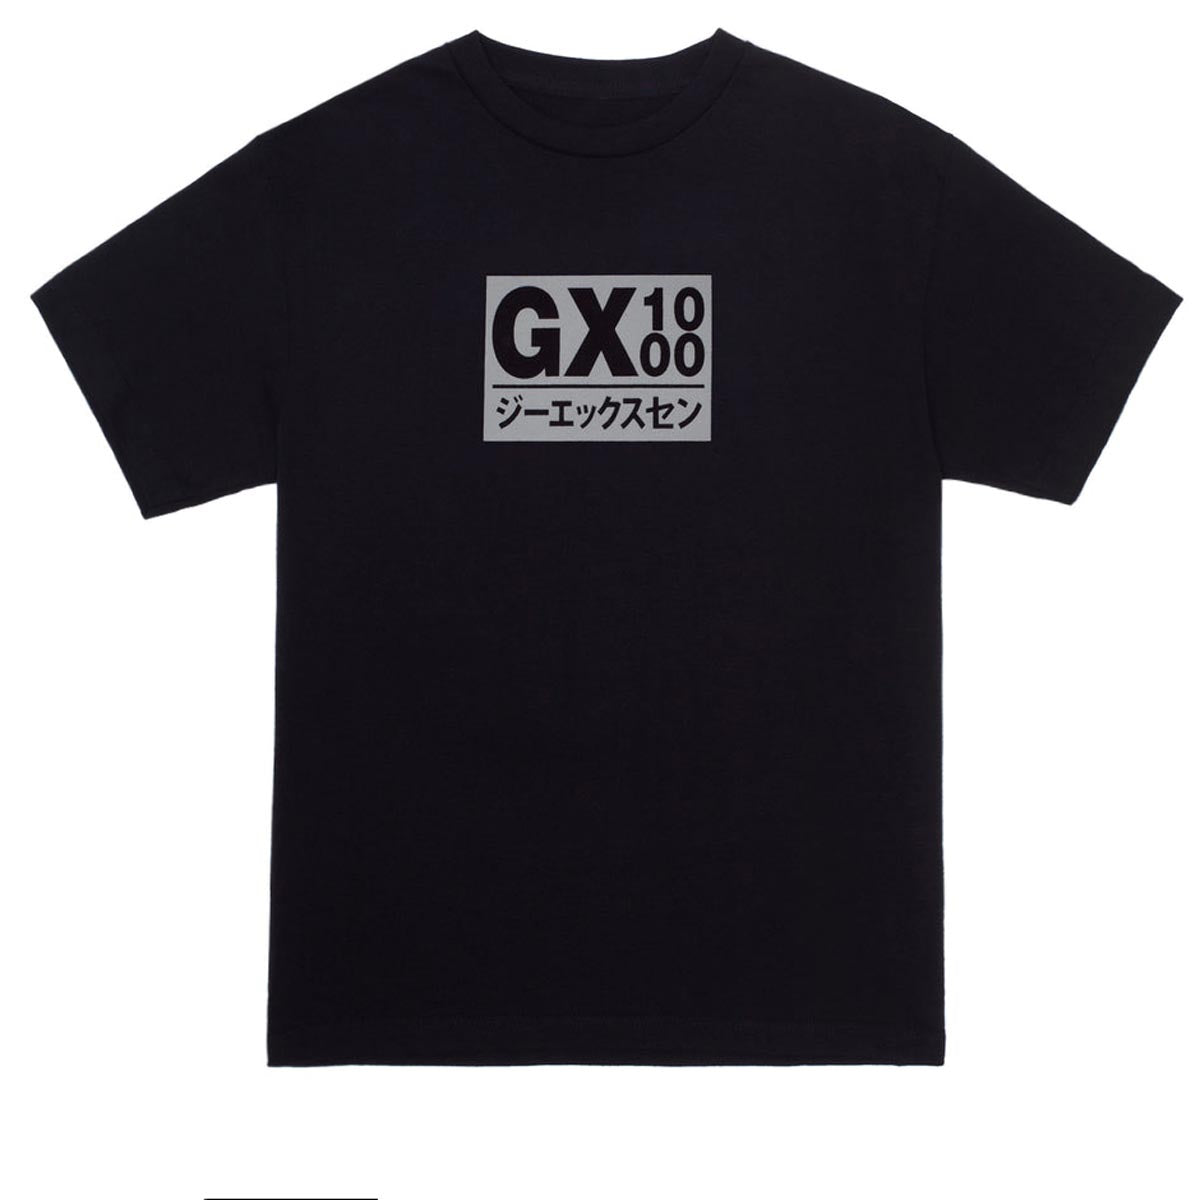 GX1000 Japan T-Shirt - Black image 1